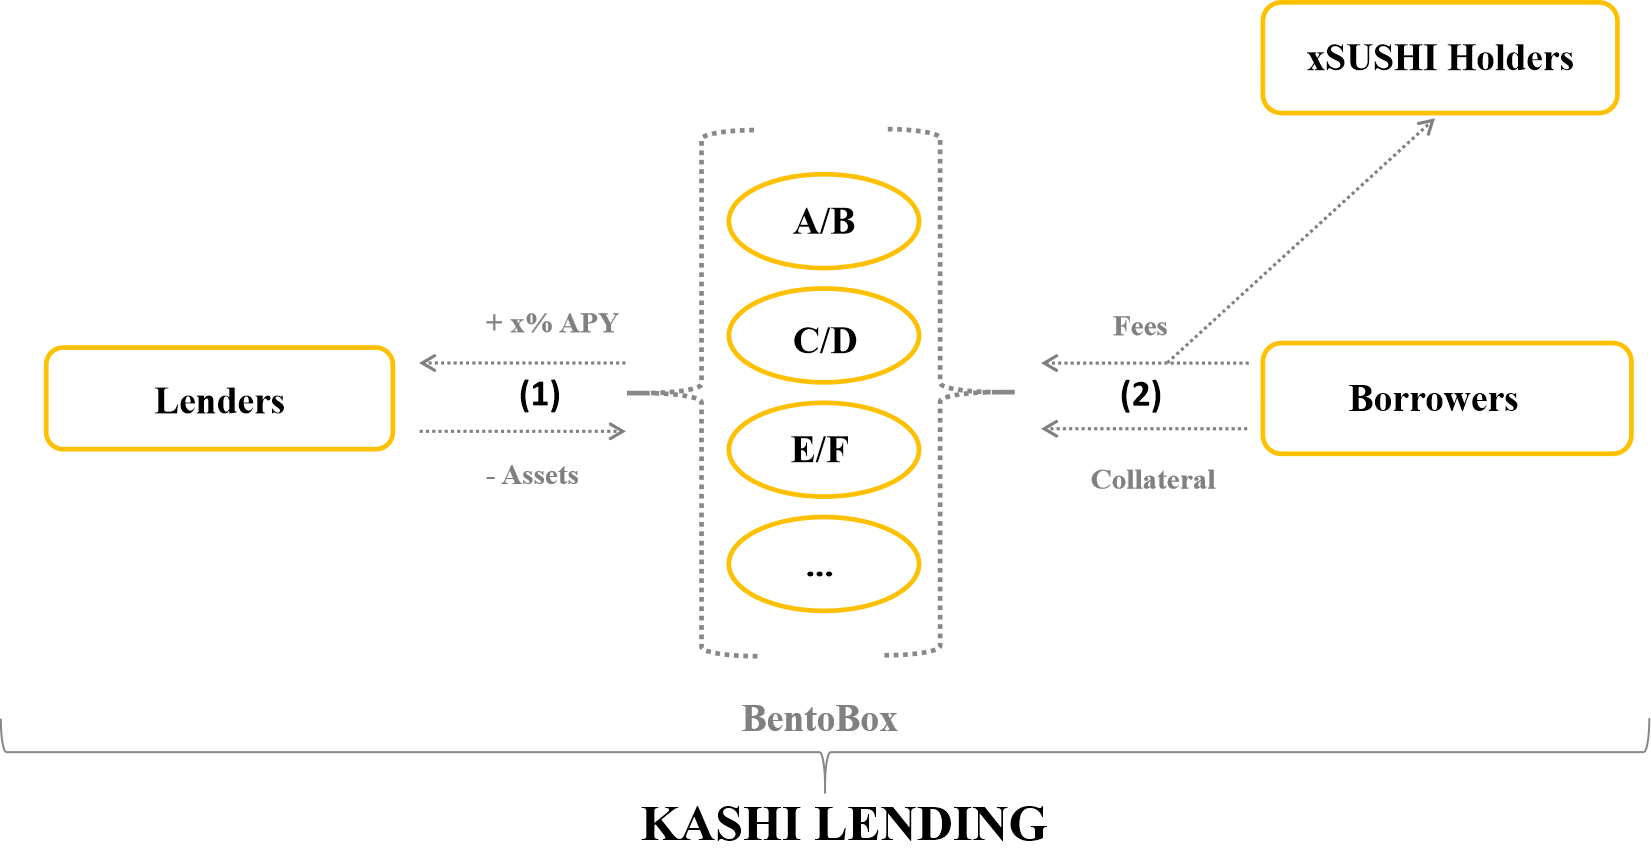 Analiza modelu funkcjonowania SushiSwap – Model wieloproduktowy